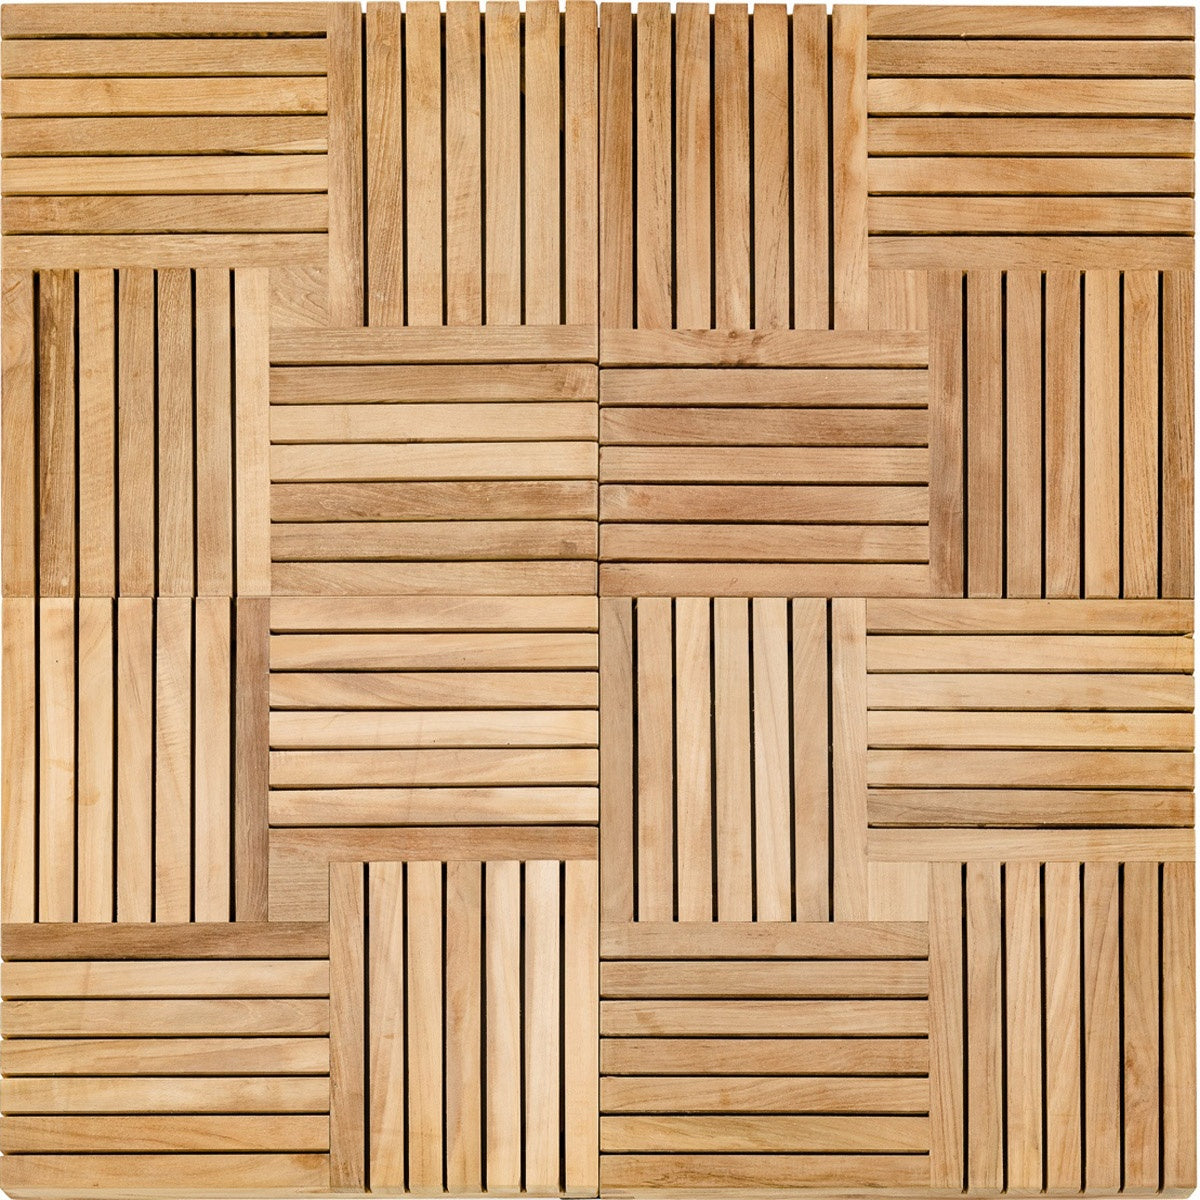 Westminster Teak - 10 Cartons Parquet Tiles (19" x 19" per tile) Covers 100 Square Feet - 70401